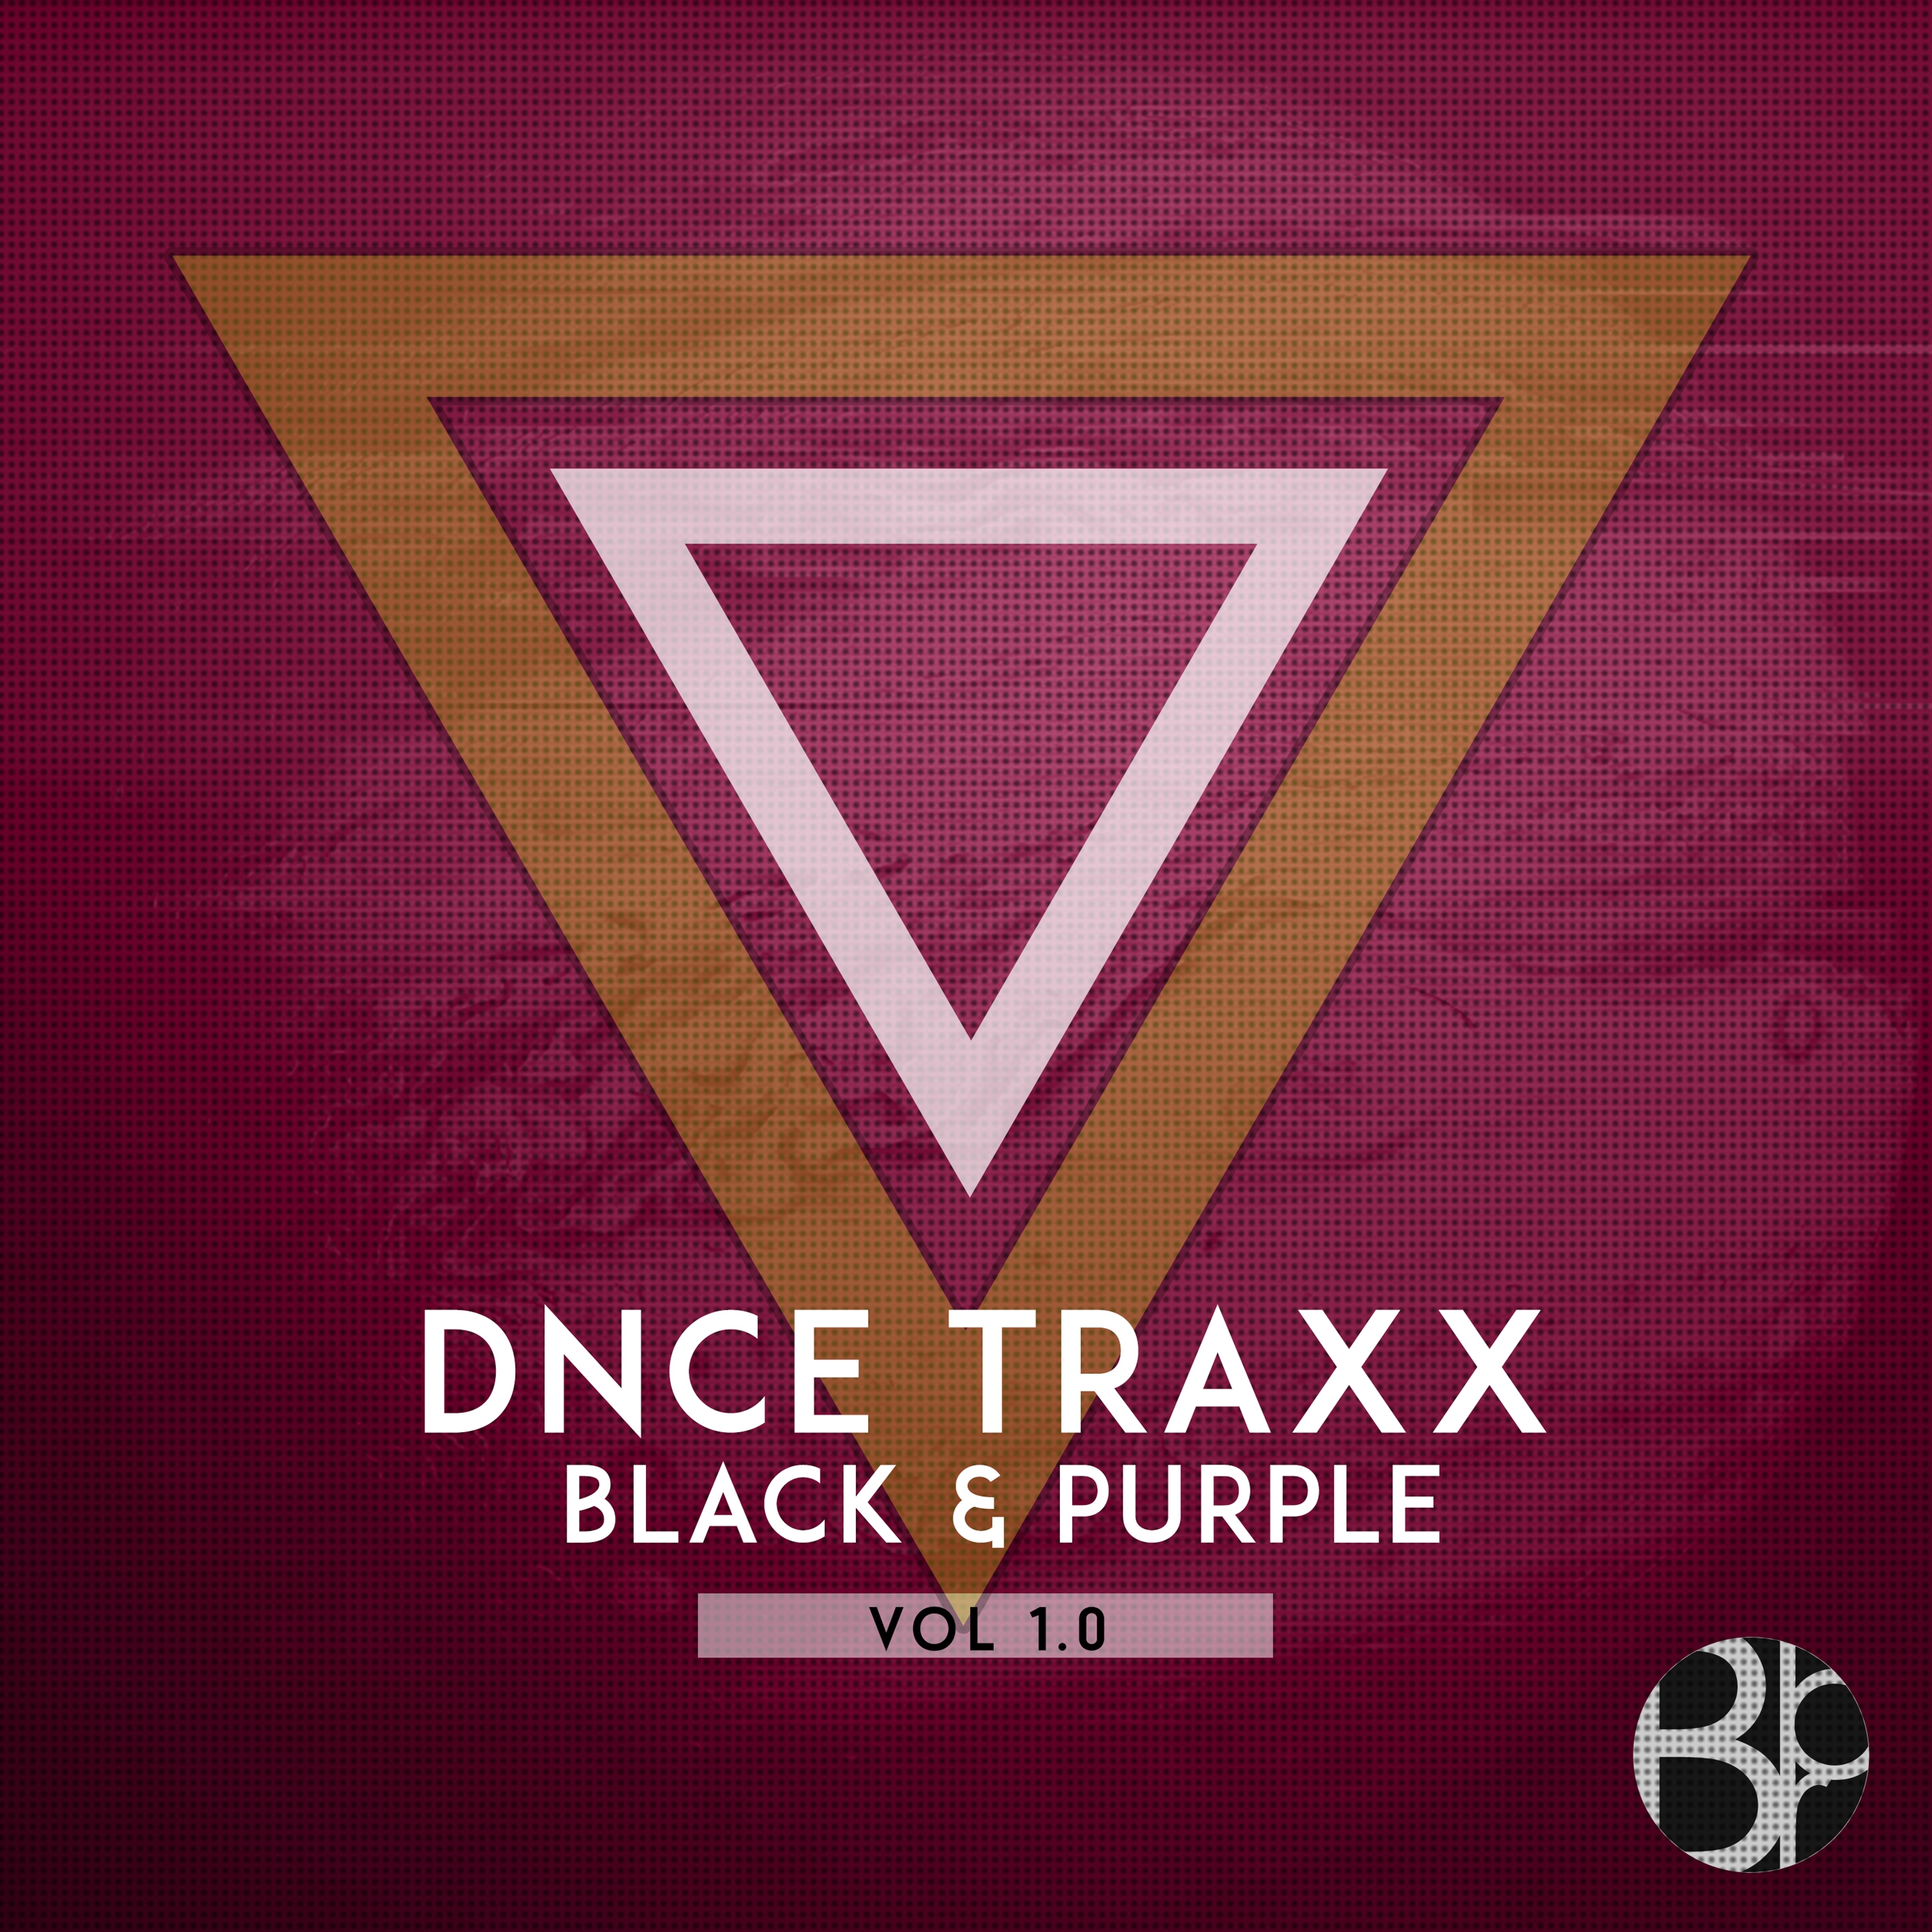 DNCE TRAXX, Vol. 1.0